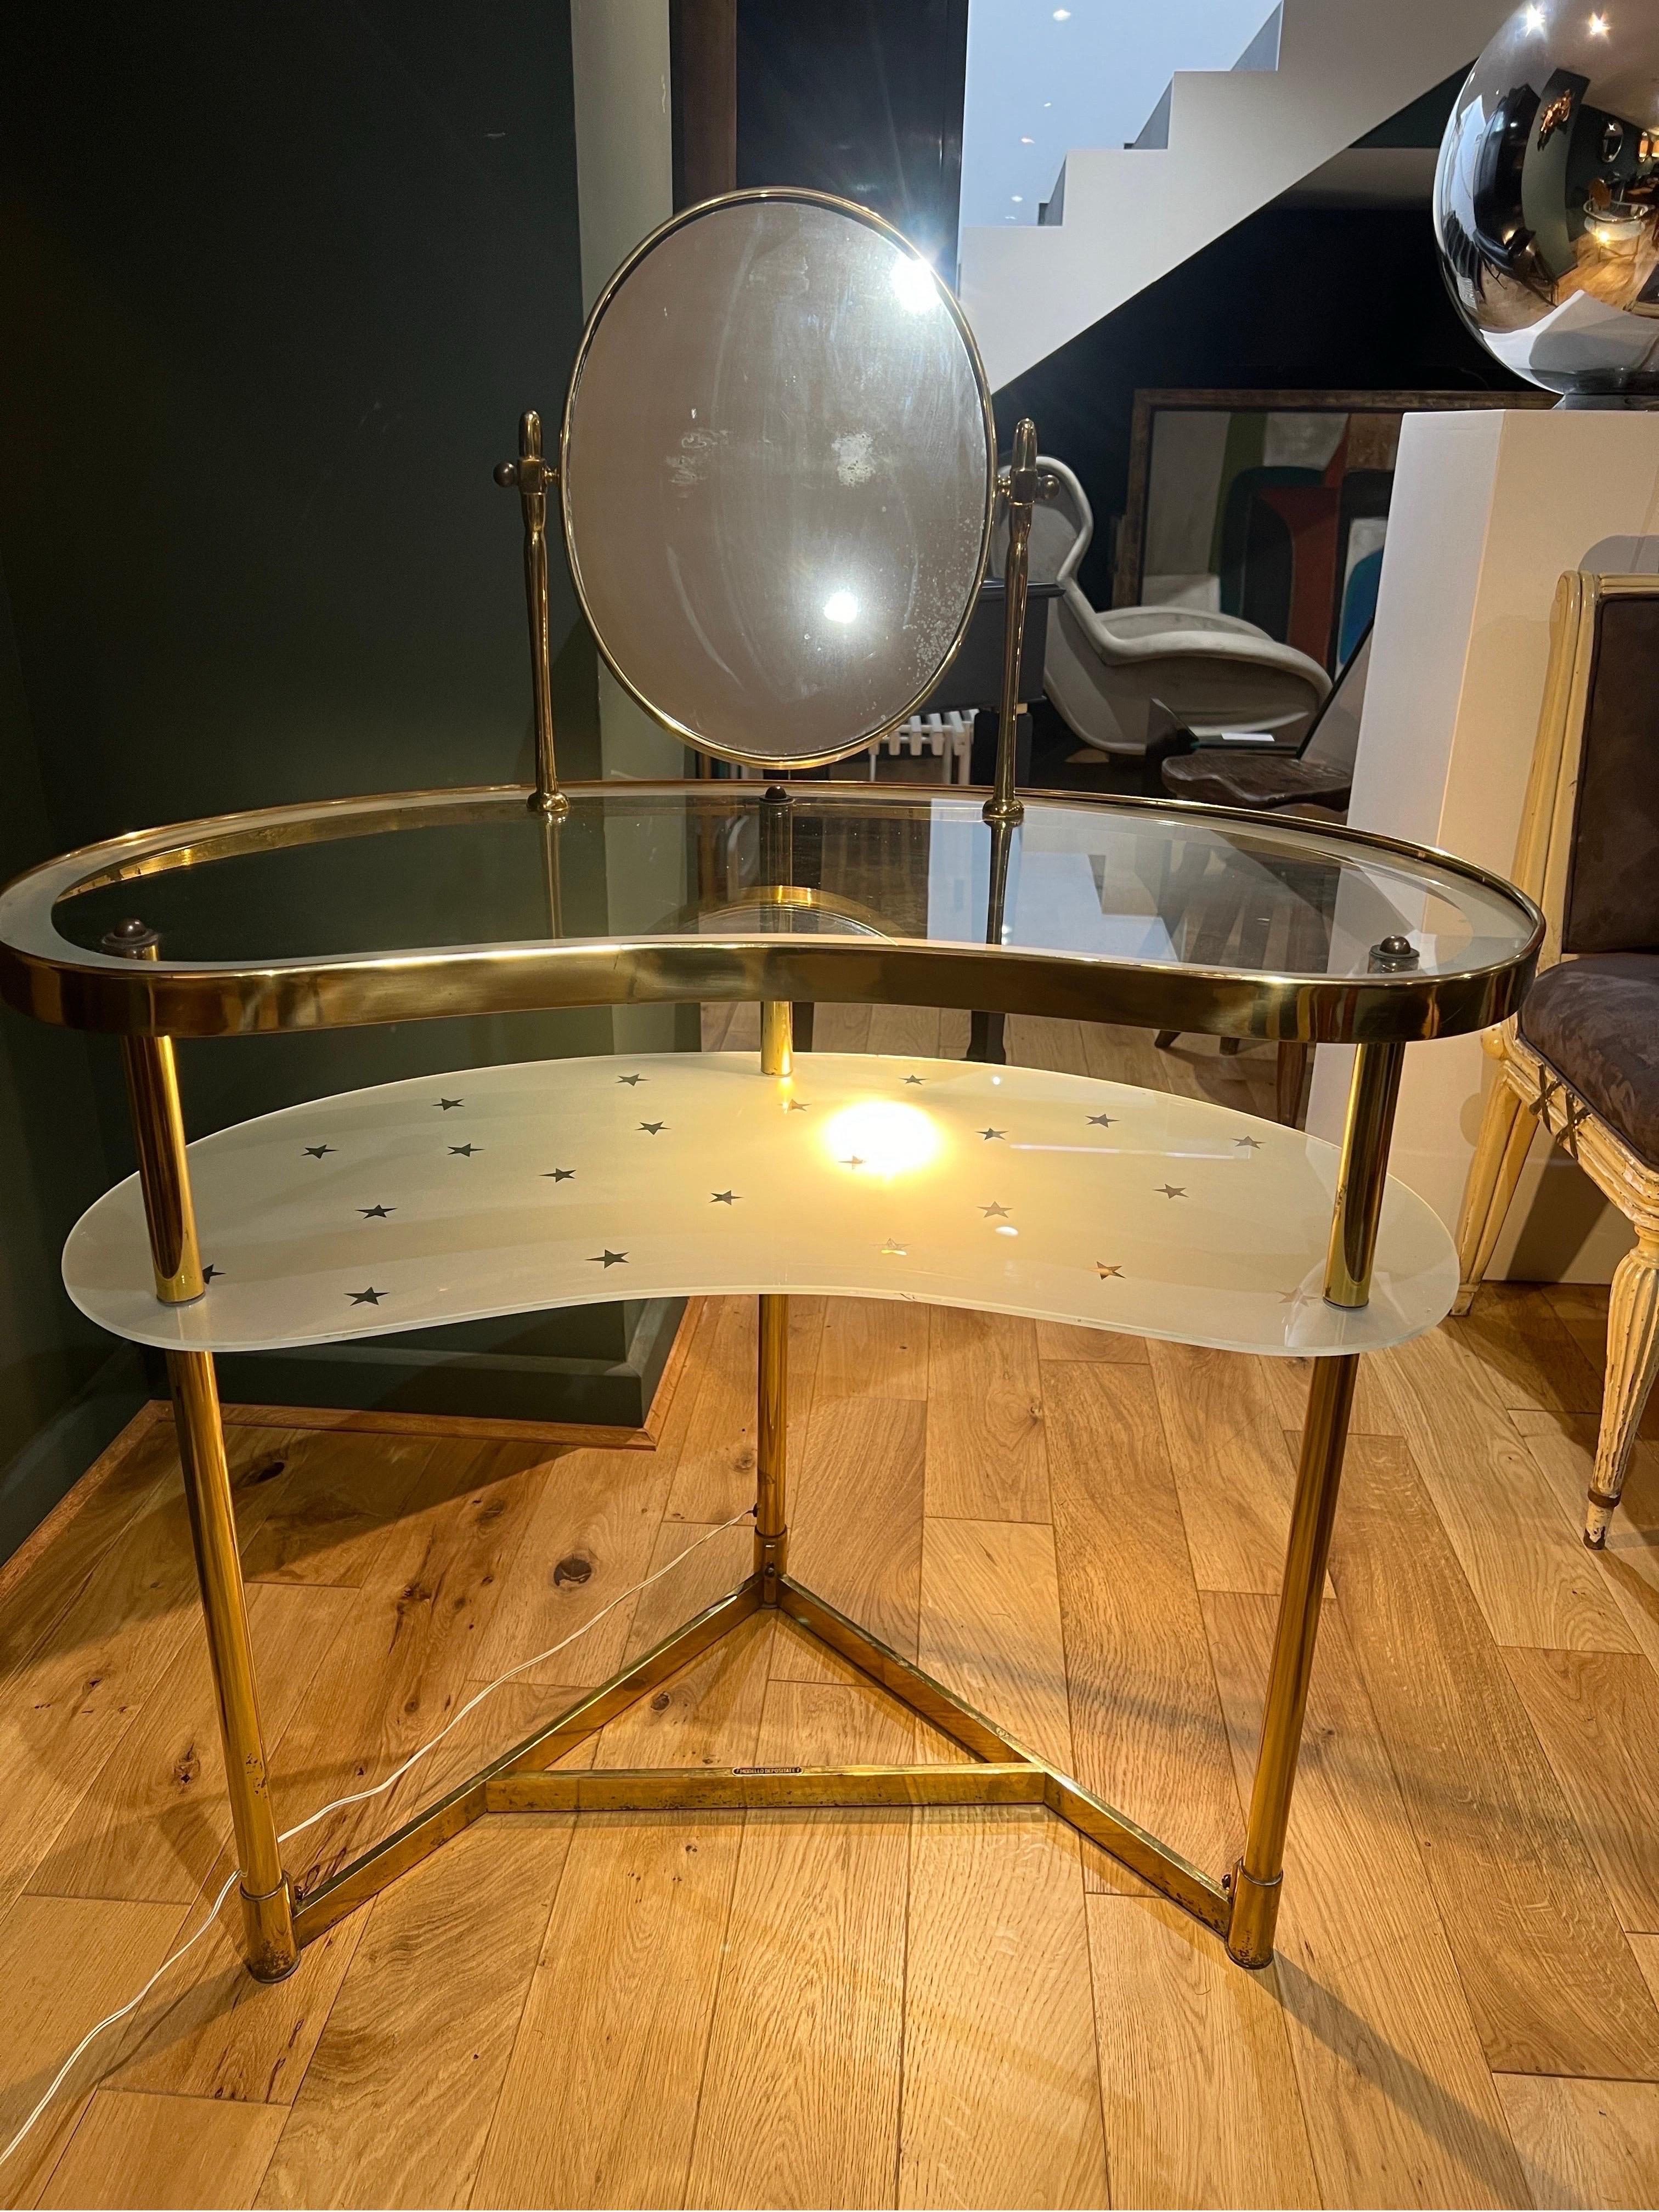 Nierenförmiger Waschtisch von Luigi Brusotti aus Messing und Glas . Der Tisch besteht aus einem schwenkbaren Spiegel mit Messingrahmen, der auf einer oberen Ebene aus transparentem Glas und einer unteren Ebene aus Milchglas mit geätzten Sternen